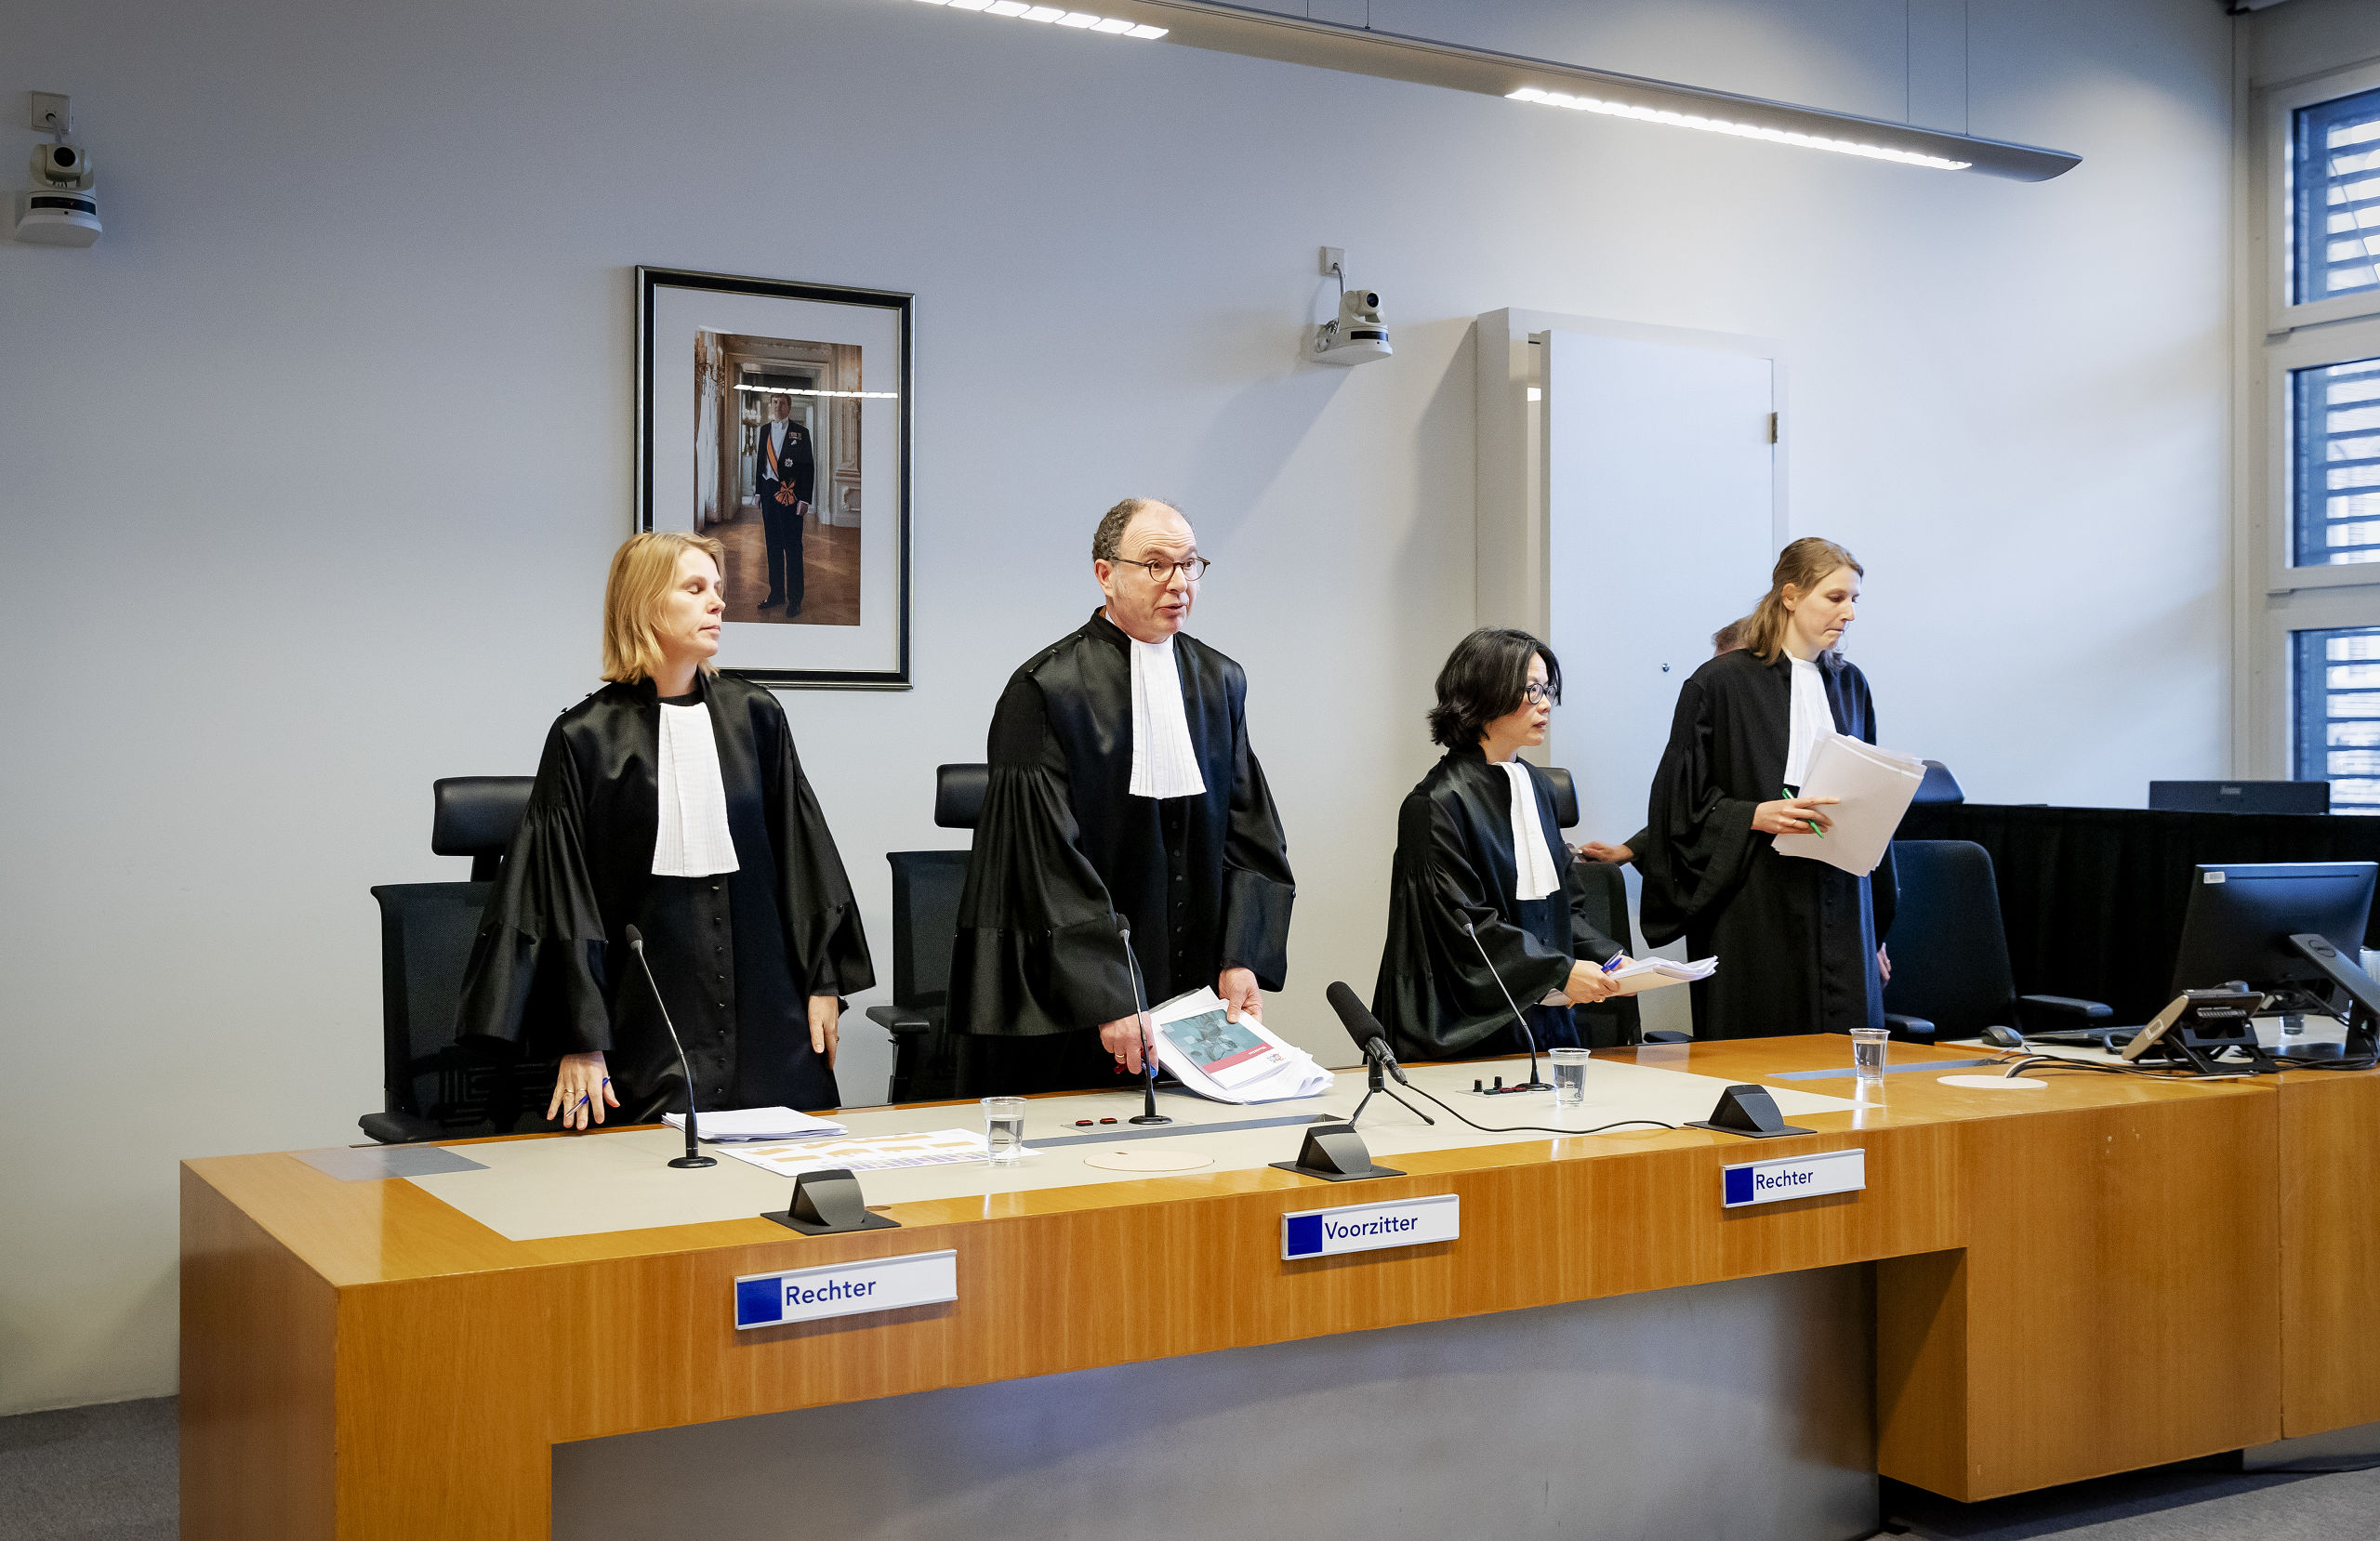 De wrakingskamer voorafgaand aan de uitspraak over de rechters in de strafzaak tegen verdachte Gökmen T. 